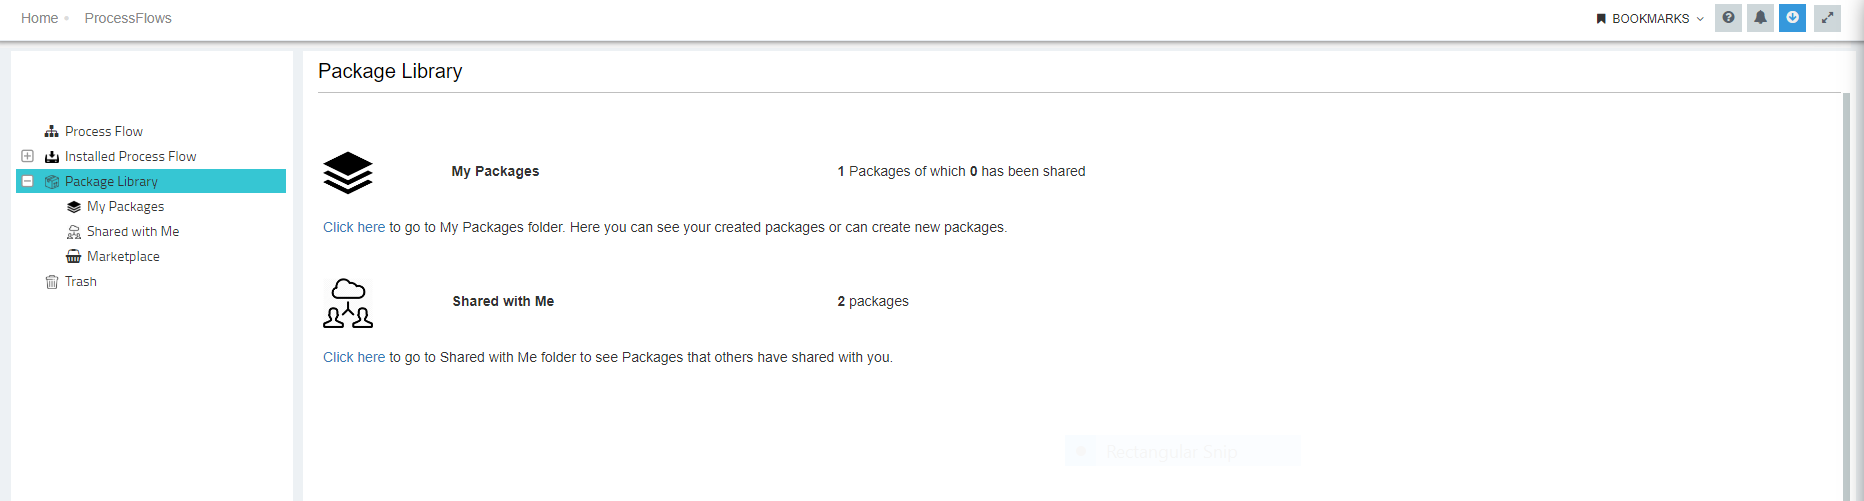 packagelisting1